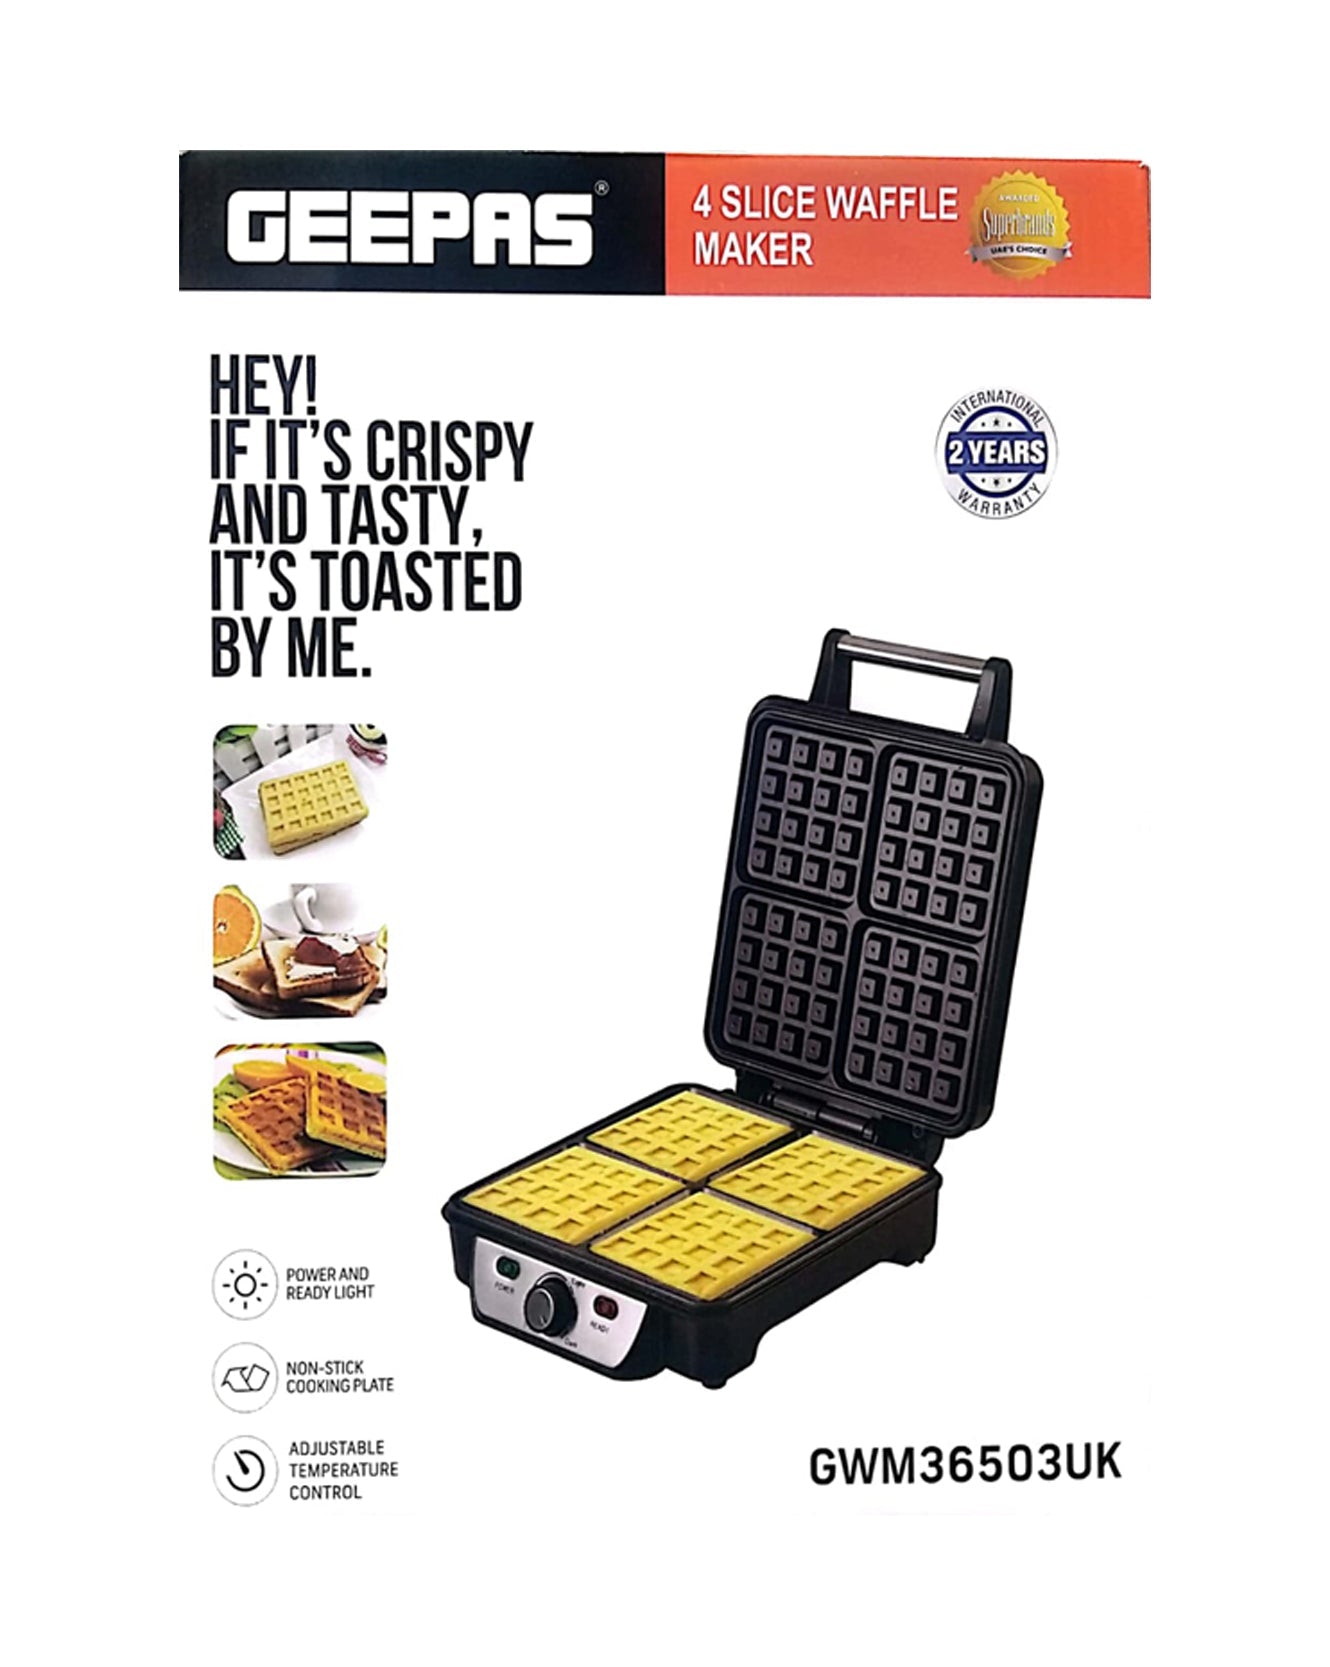 GEEPAS 4 Slice Waffle Maker (GWM36503UK)